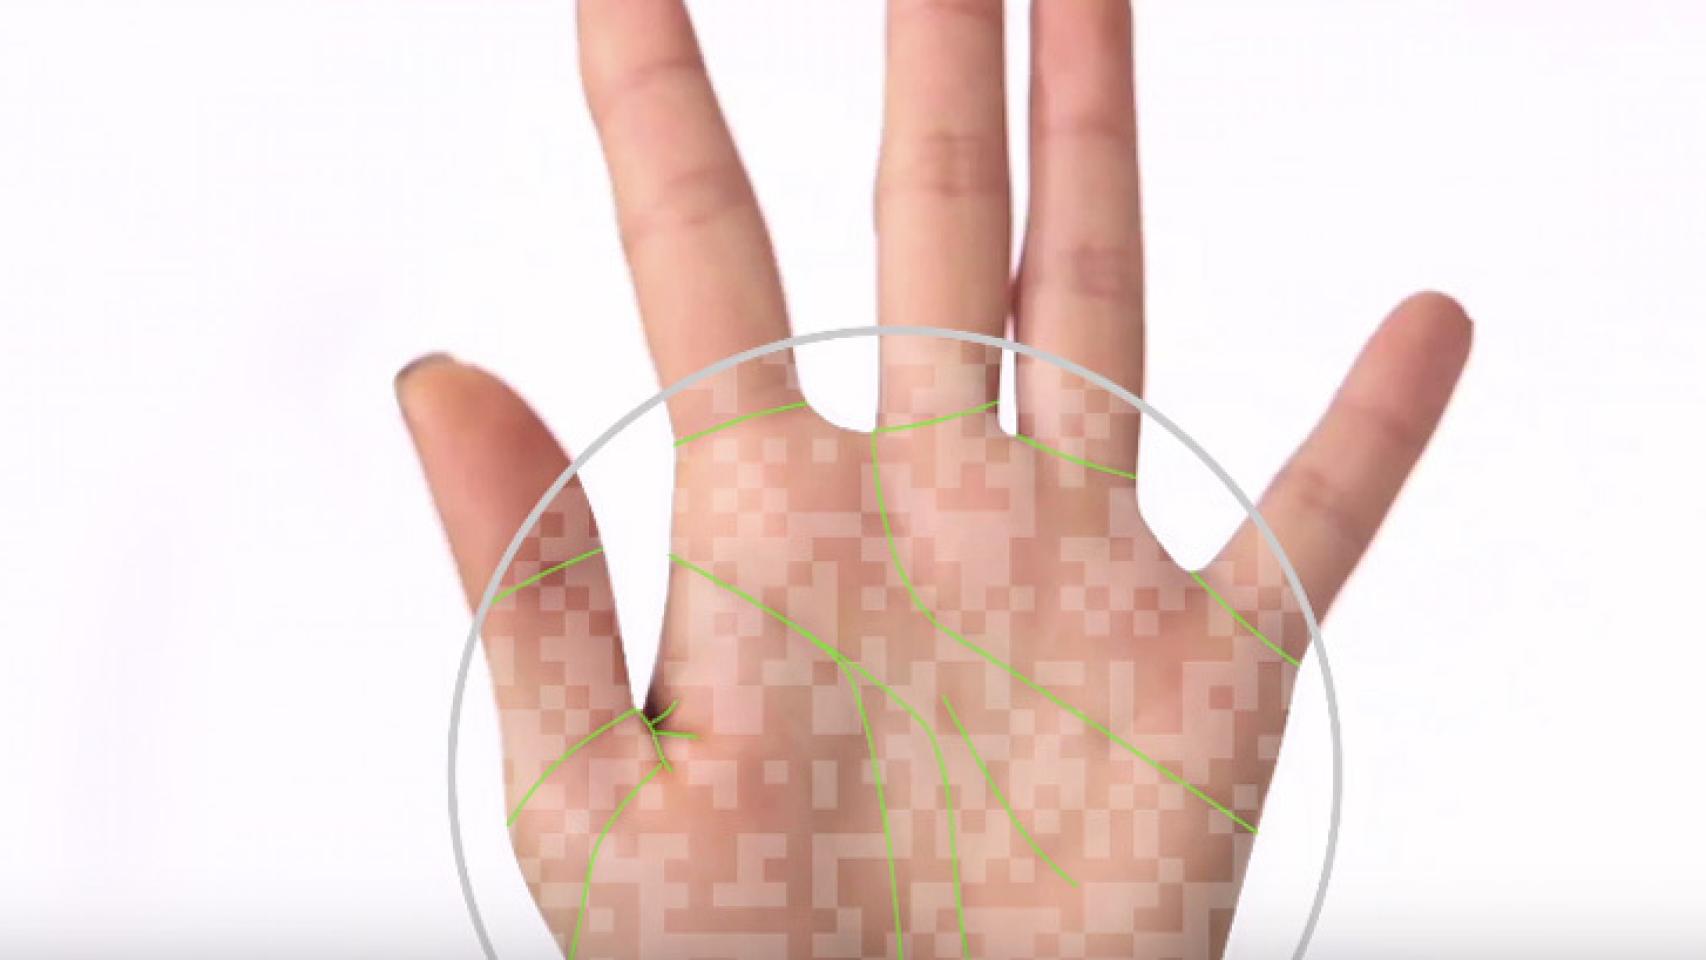 Móviles que leen la mano: el futuro de la seguridad biométrica